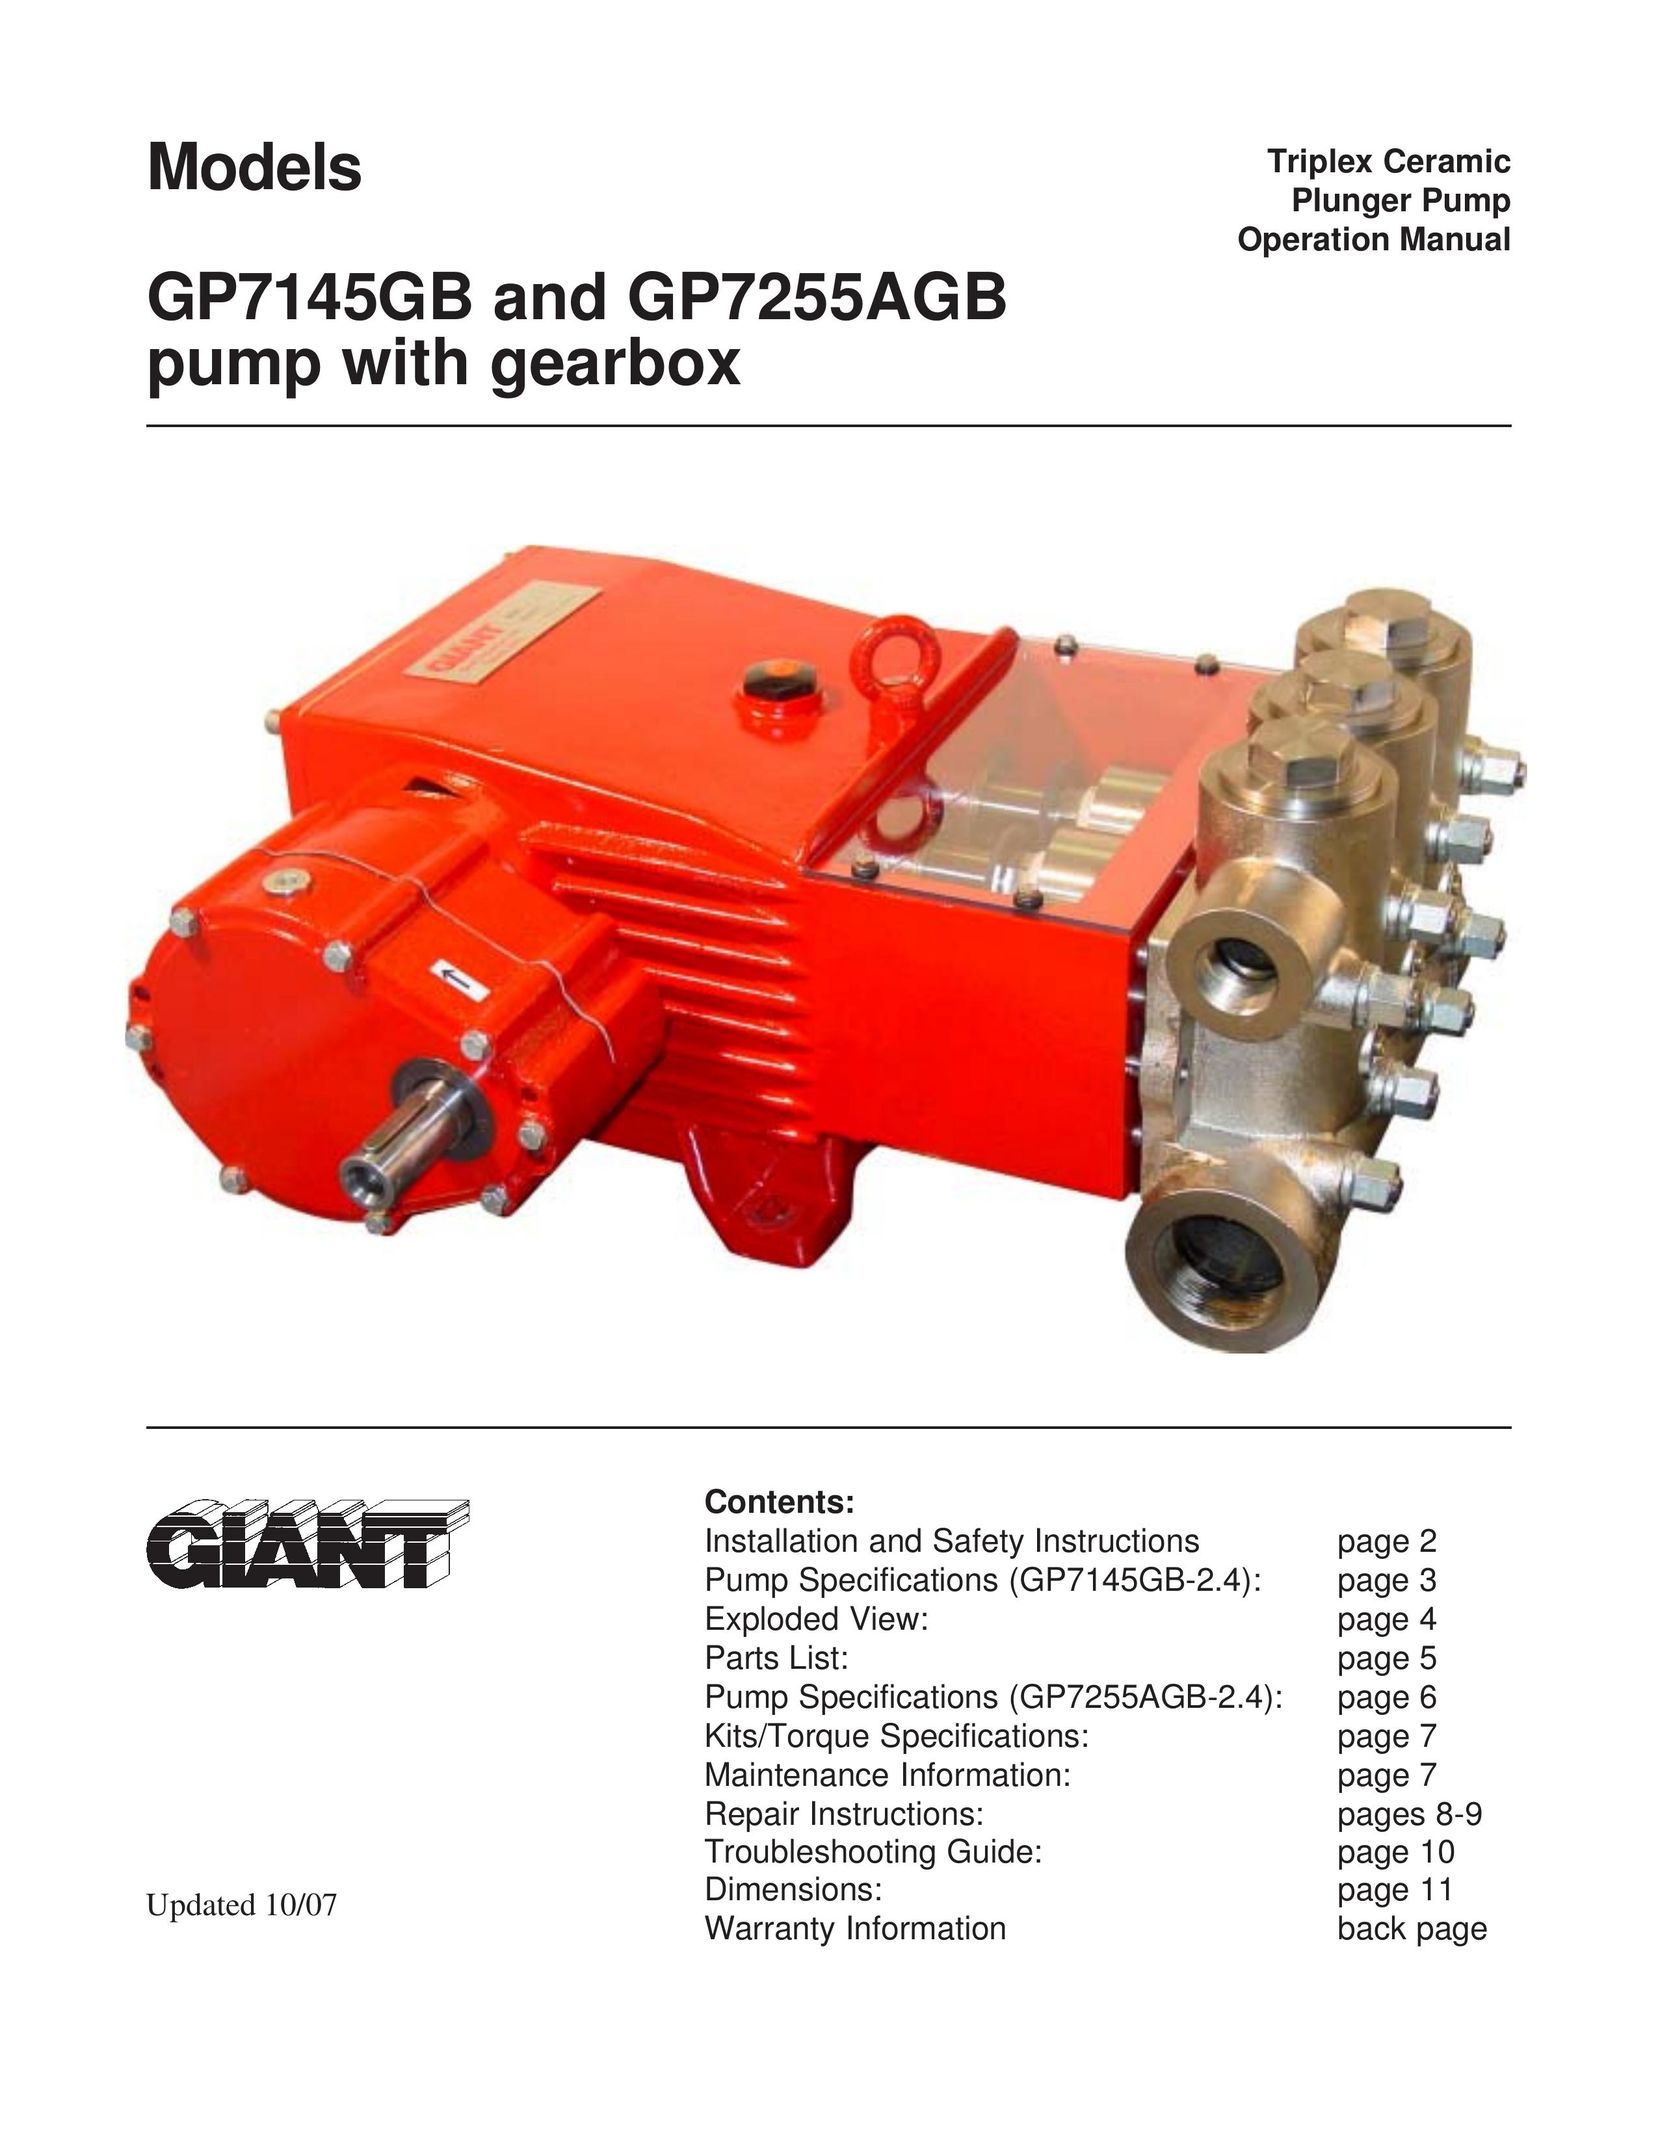 Giant GP7145GB Water Pump User Manual